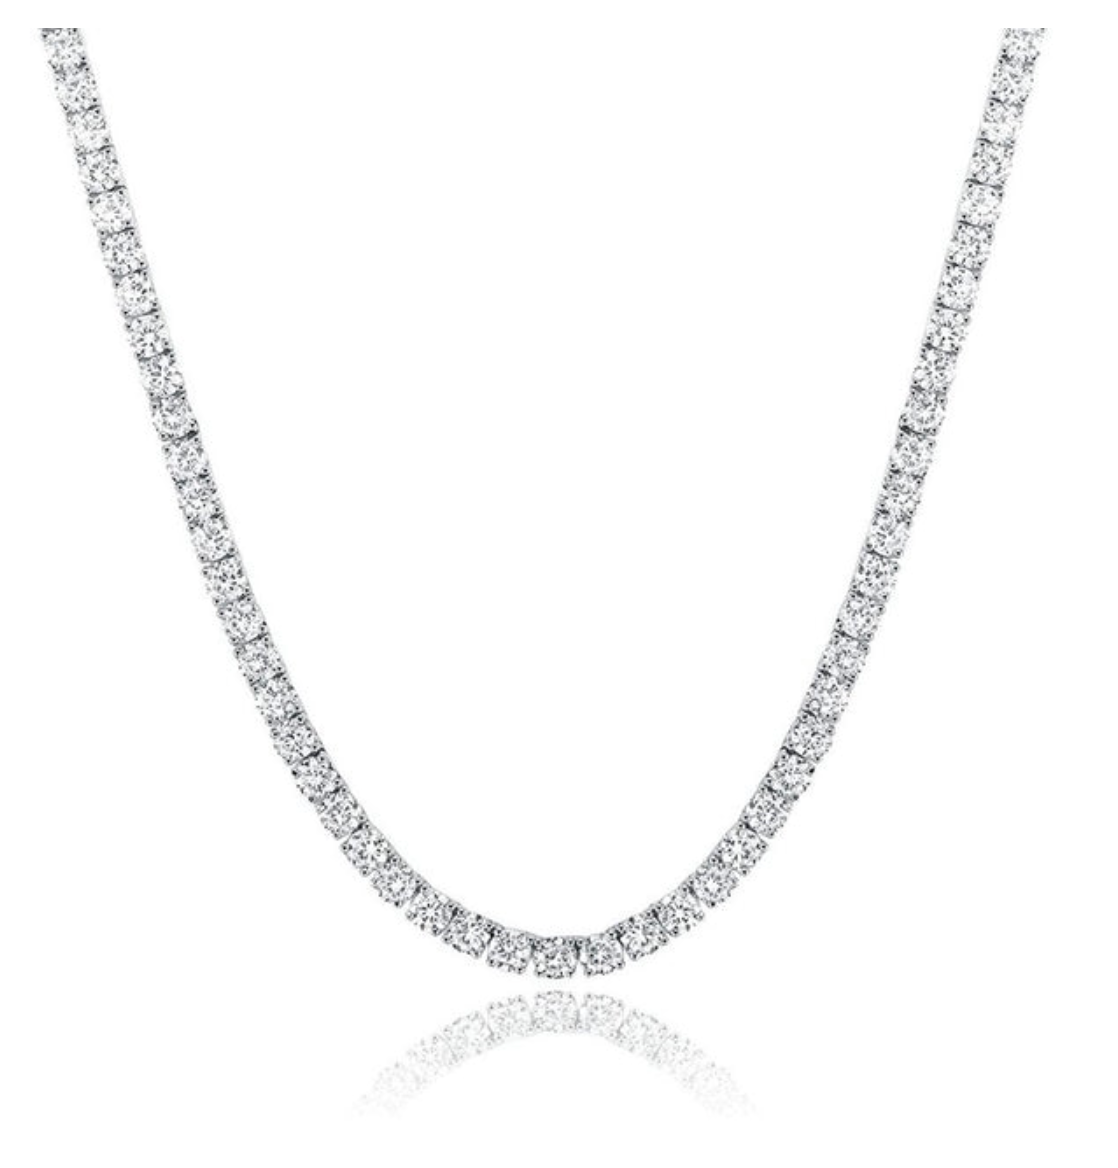 29.72 carat lab grown tennis necklace, E-F color, VVS-VS clarity, 14k gold